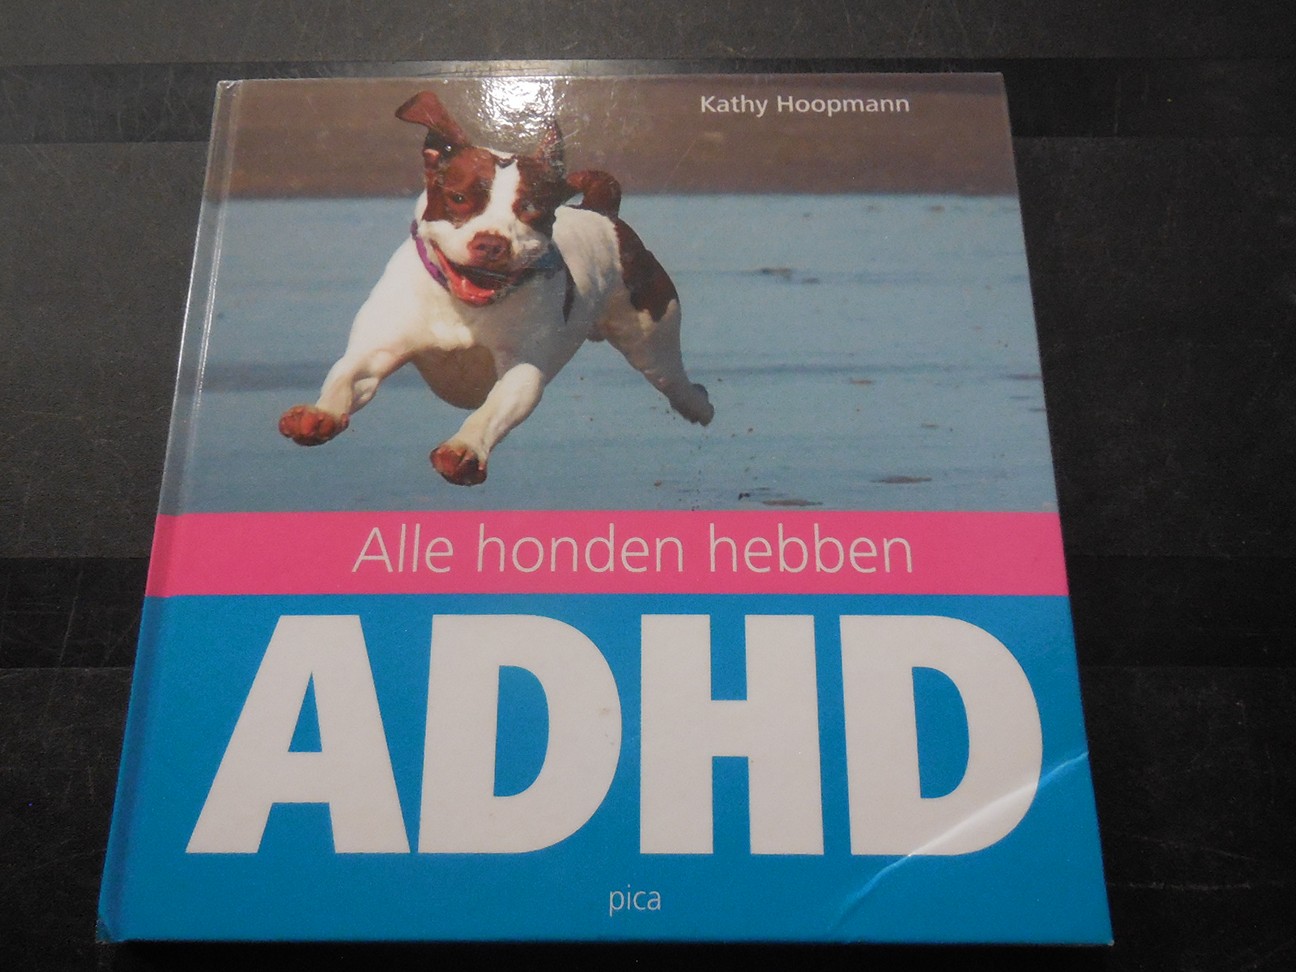 Alle honden hebben ADHD